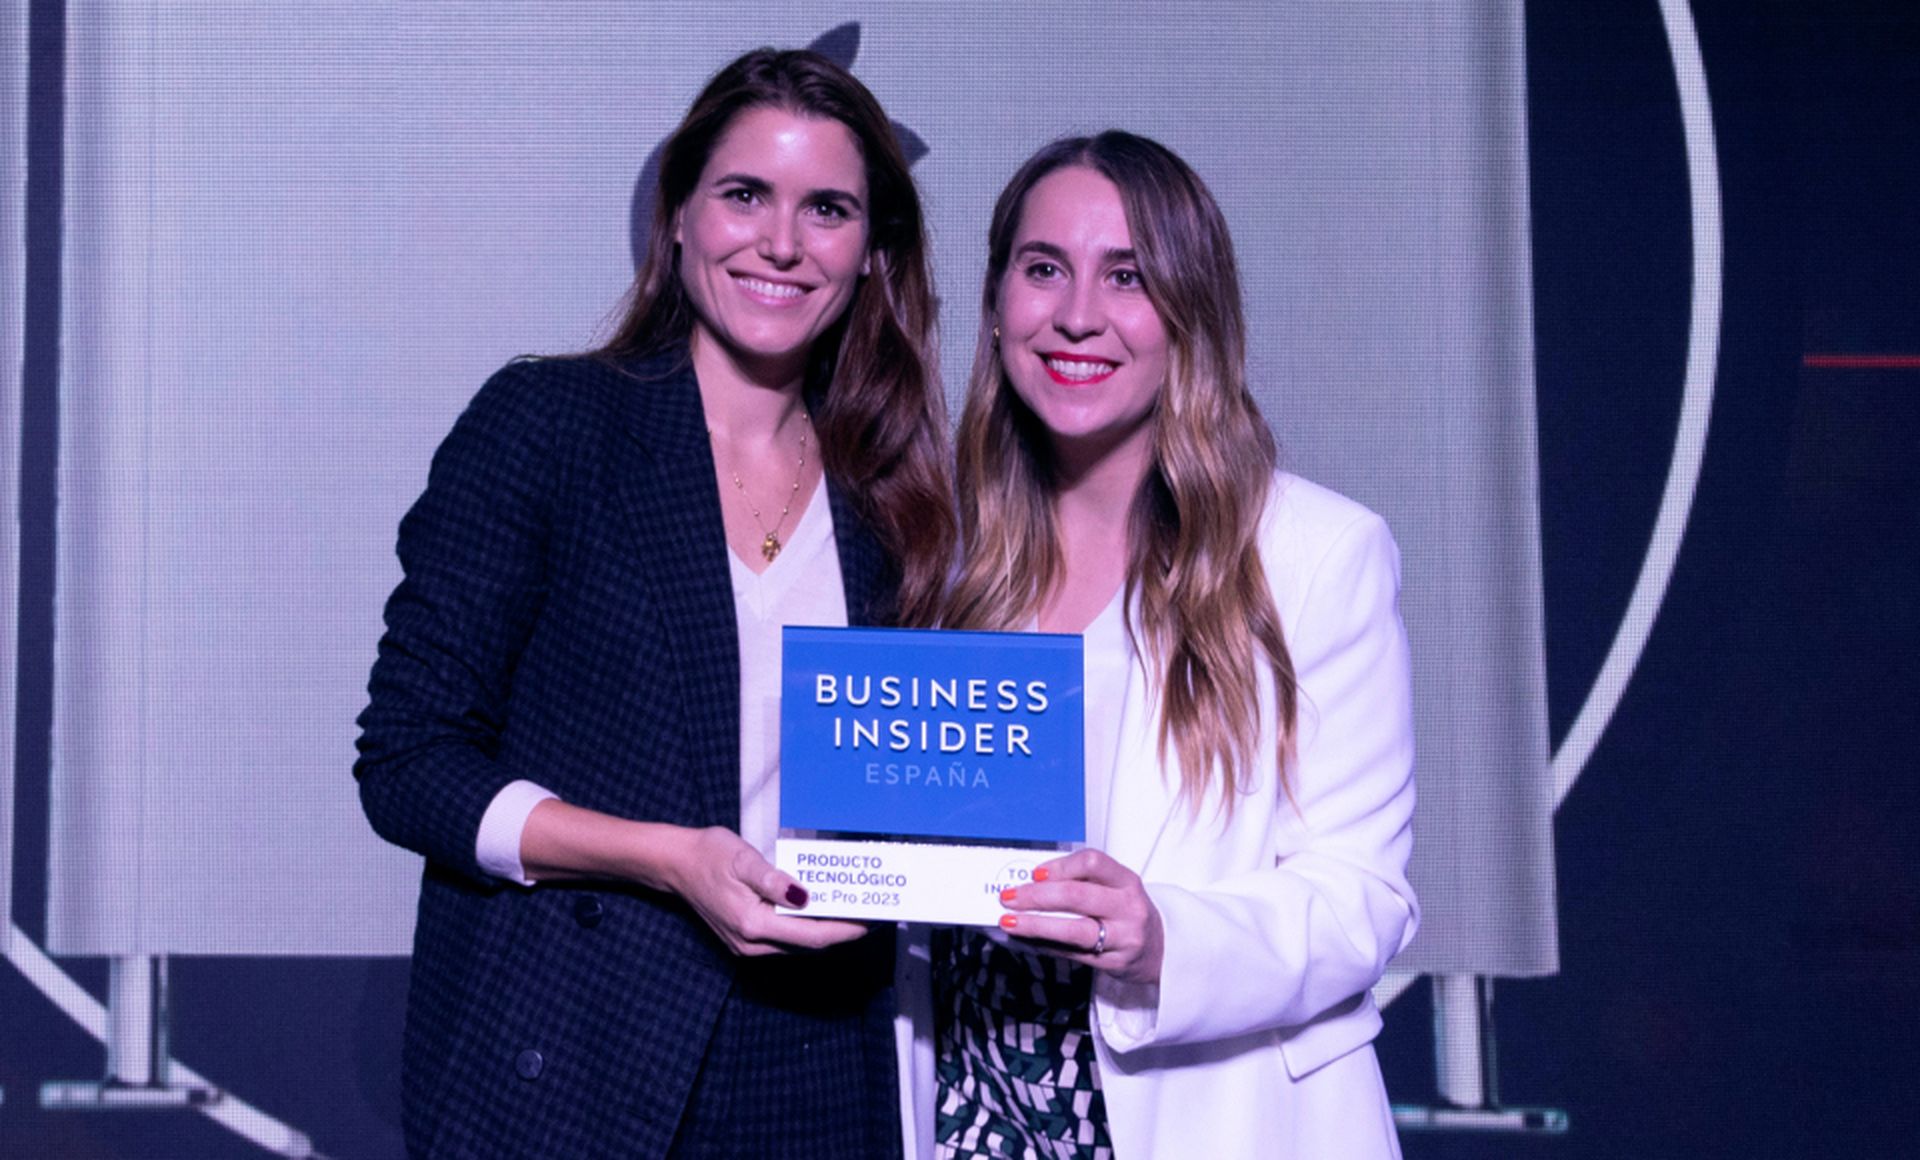 De izquierda a derecha, Silvia Martín-Prat, PR Manager de Apple España, recibe el premio Top Insider del Año en la categoría de Producto Tecnológico de Ana Muñoz, redactora jefe de Tecnología de Business Insider España.